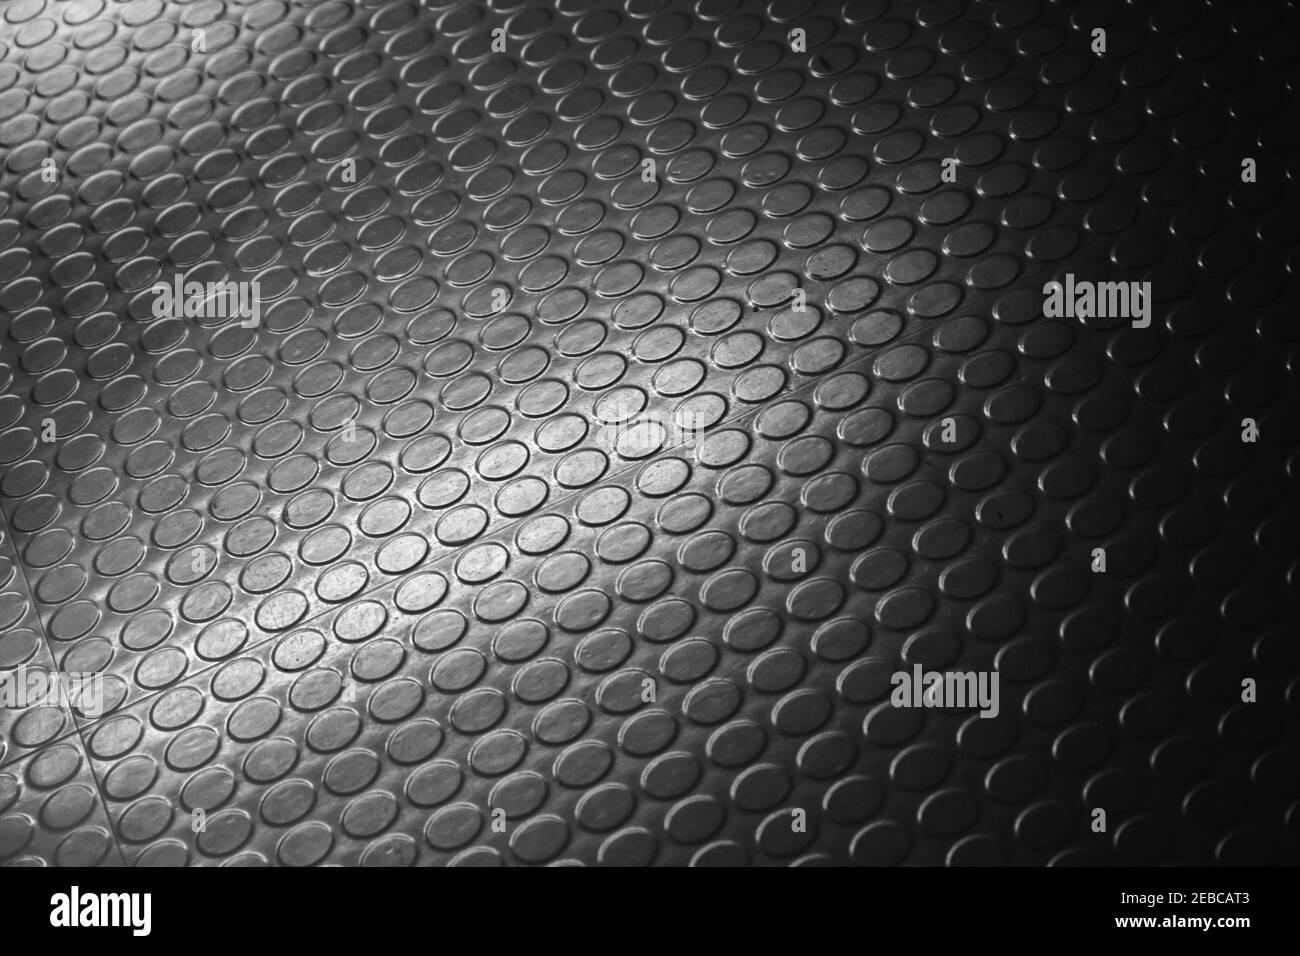 Relief de tapis en caoutchouc noir brillant et pointillé. Photo d'arrière-plan avec mise au point douce sélective Banque D'Images